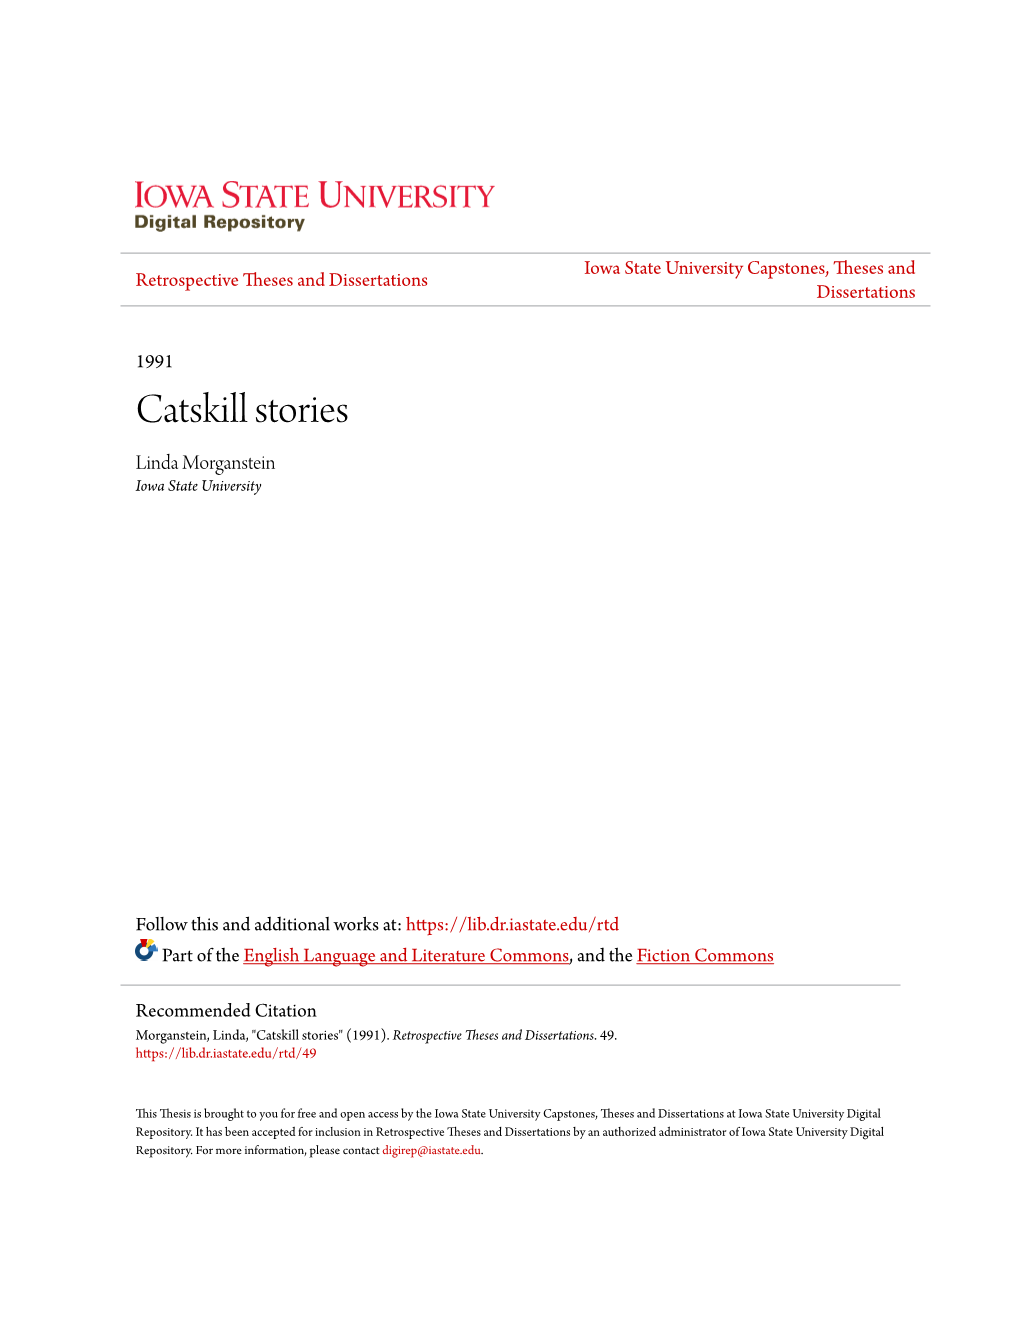 Catskill Stories Linda Morganstein Iowa State University